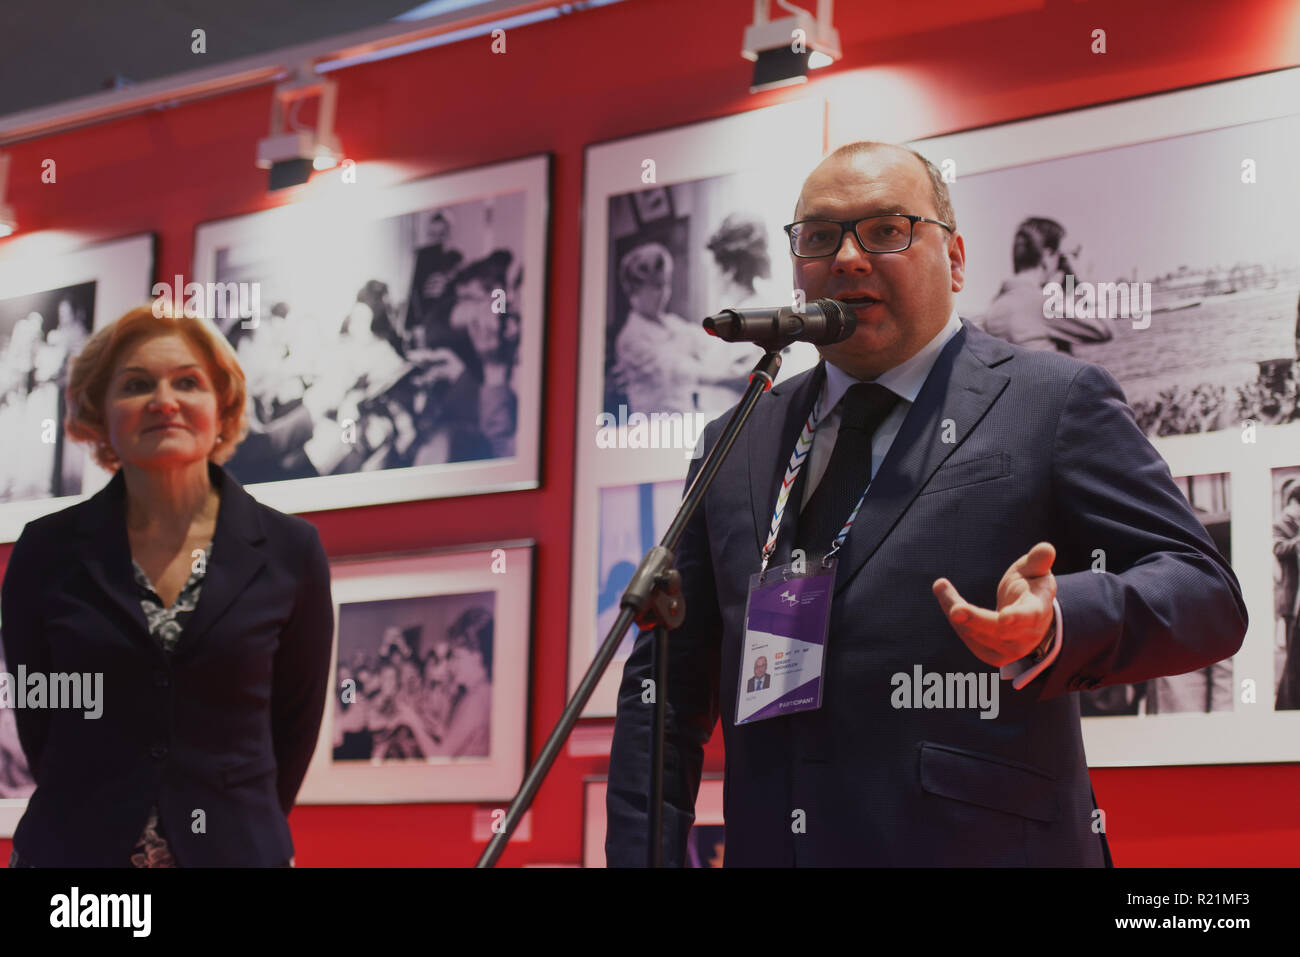 Saint-pétersbourg, Russie - 15 novembre 2018 : Sergueï Mikhailov, directeur général de l'agence ITAR-TASS (centre), et Olga Golodets, vice-premier ministre de Russ Banque D'Images